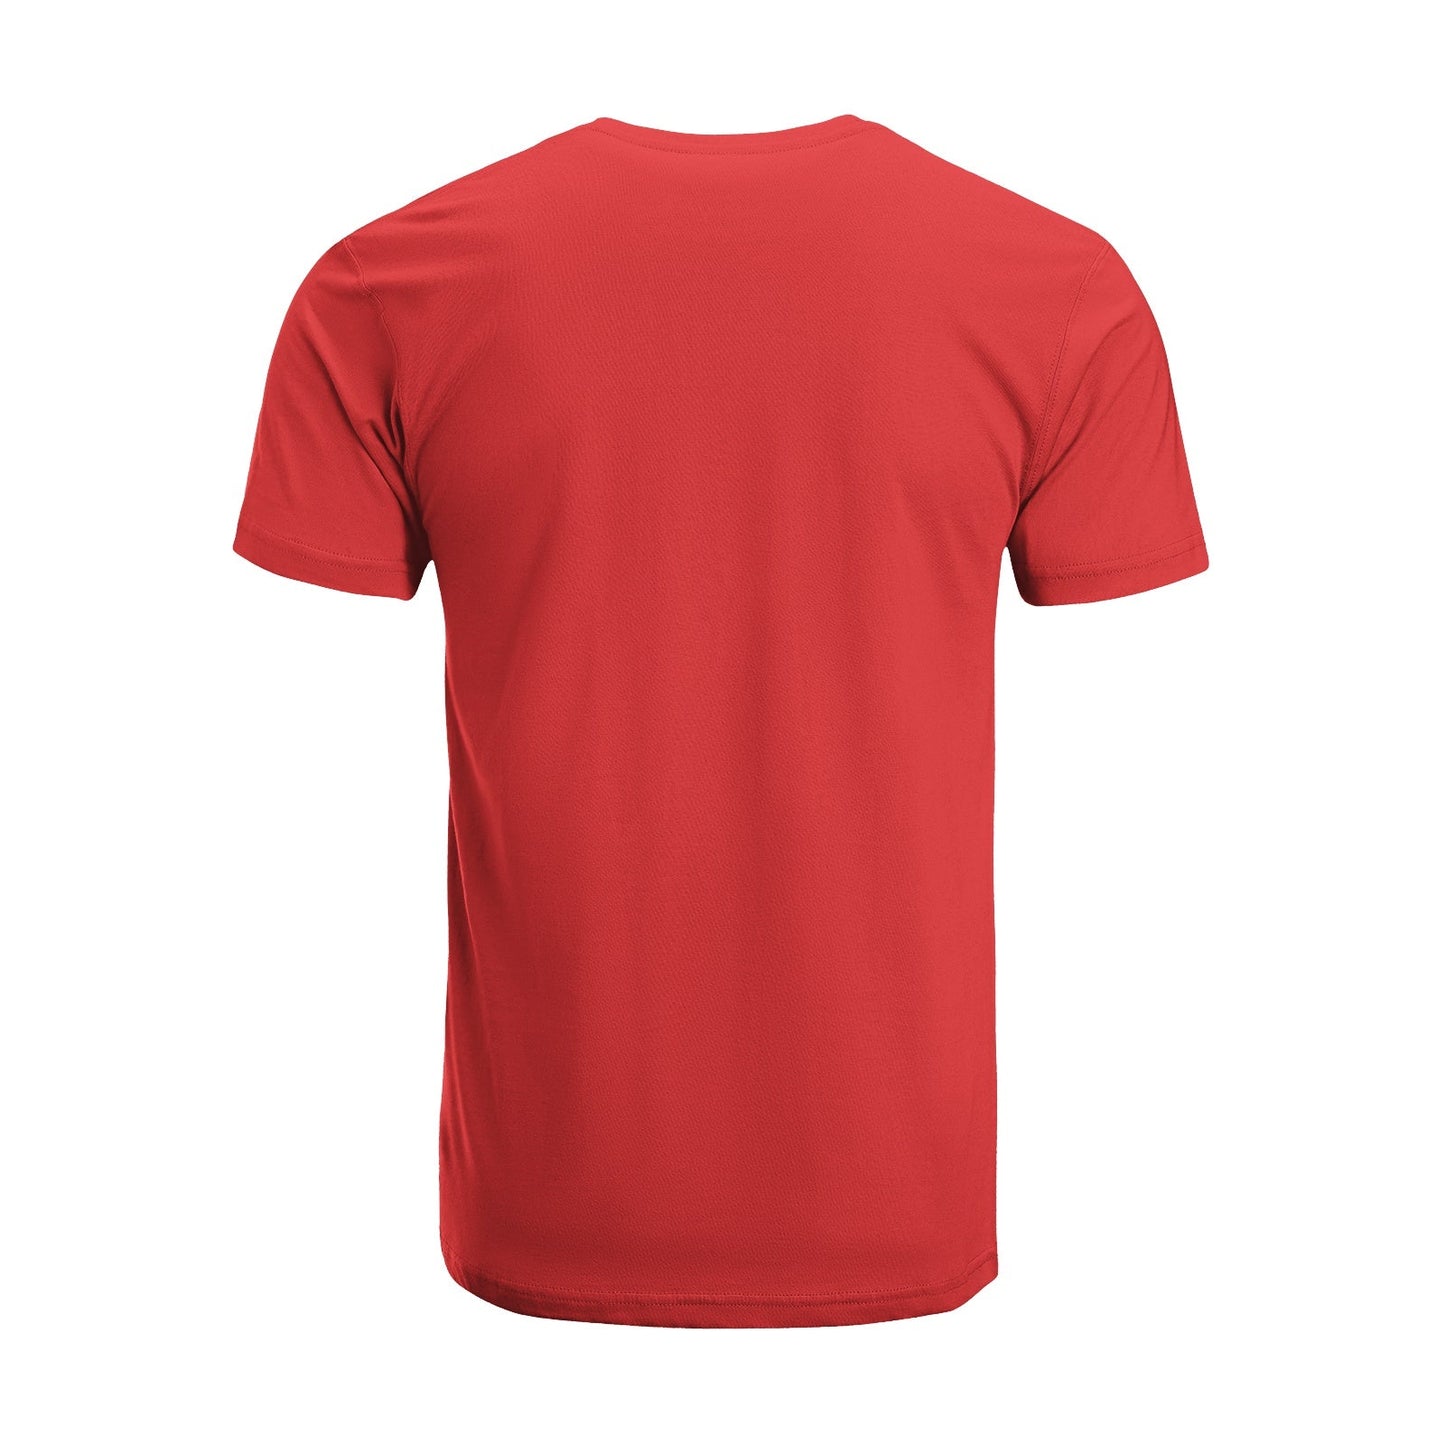 Unisex Short Sleeve Crew Neck Cotton Jersey T-Shirt TRUCK 28